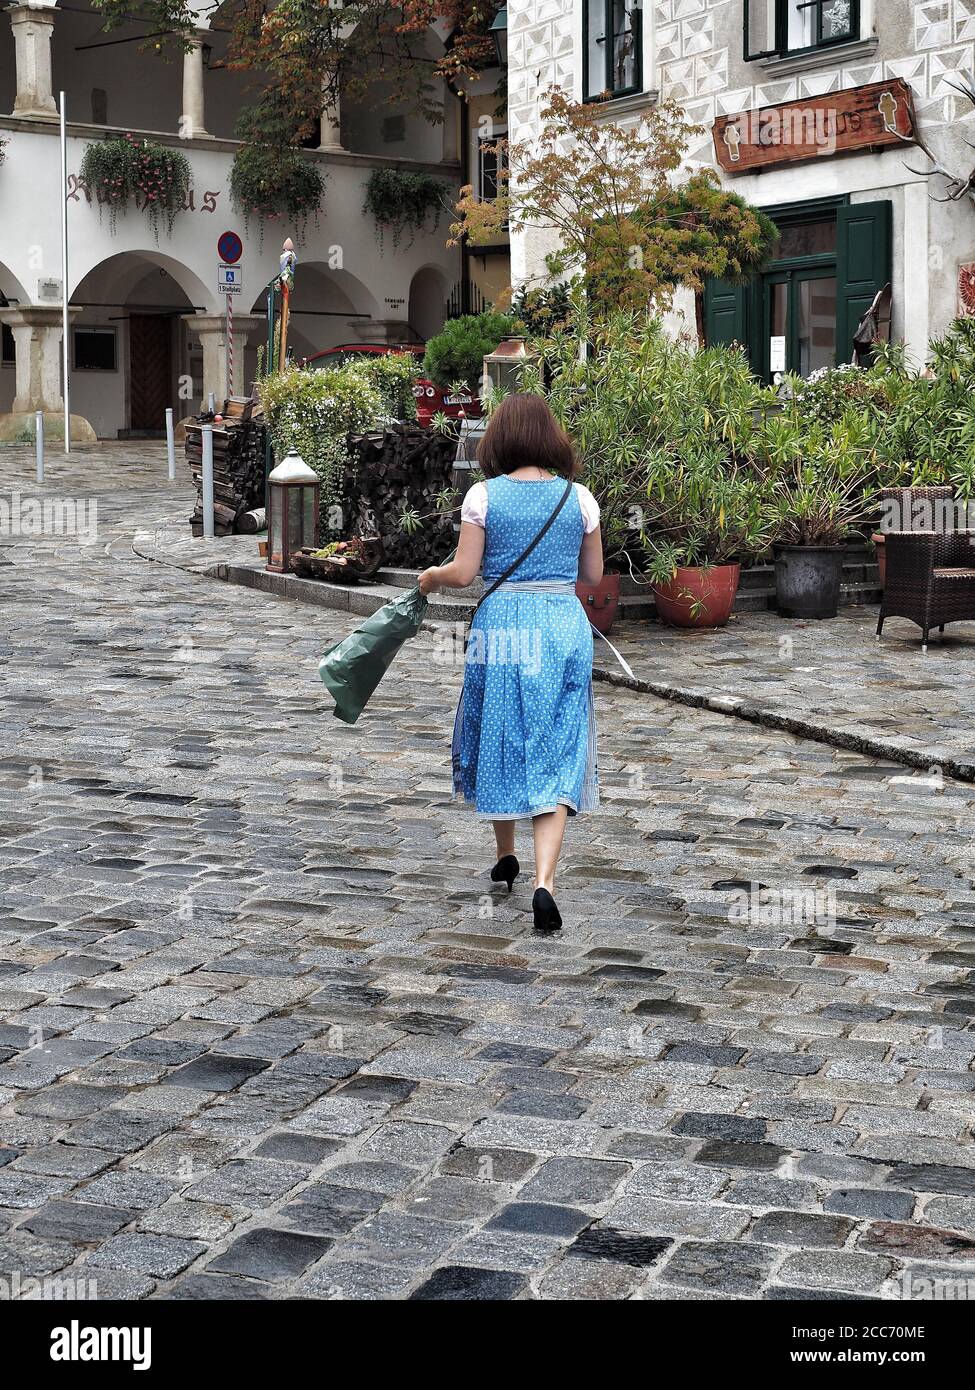 GUMPOLDSKIRCHEN, AUTRICHE - 09/01/2018. Femme caucasienne en costume typiquement autrichien bleu marchant dans la rue. Banque D'Images